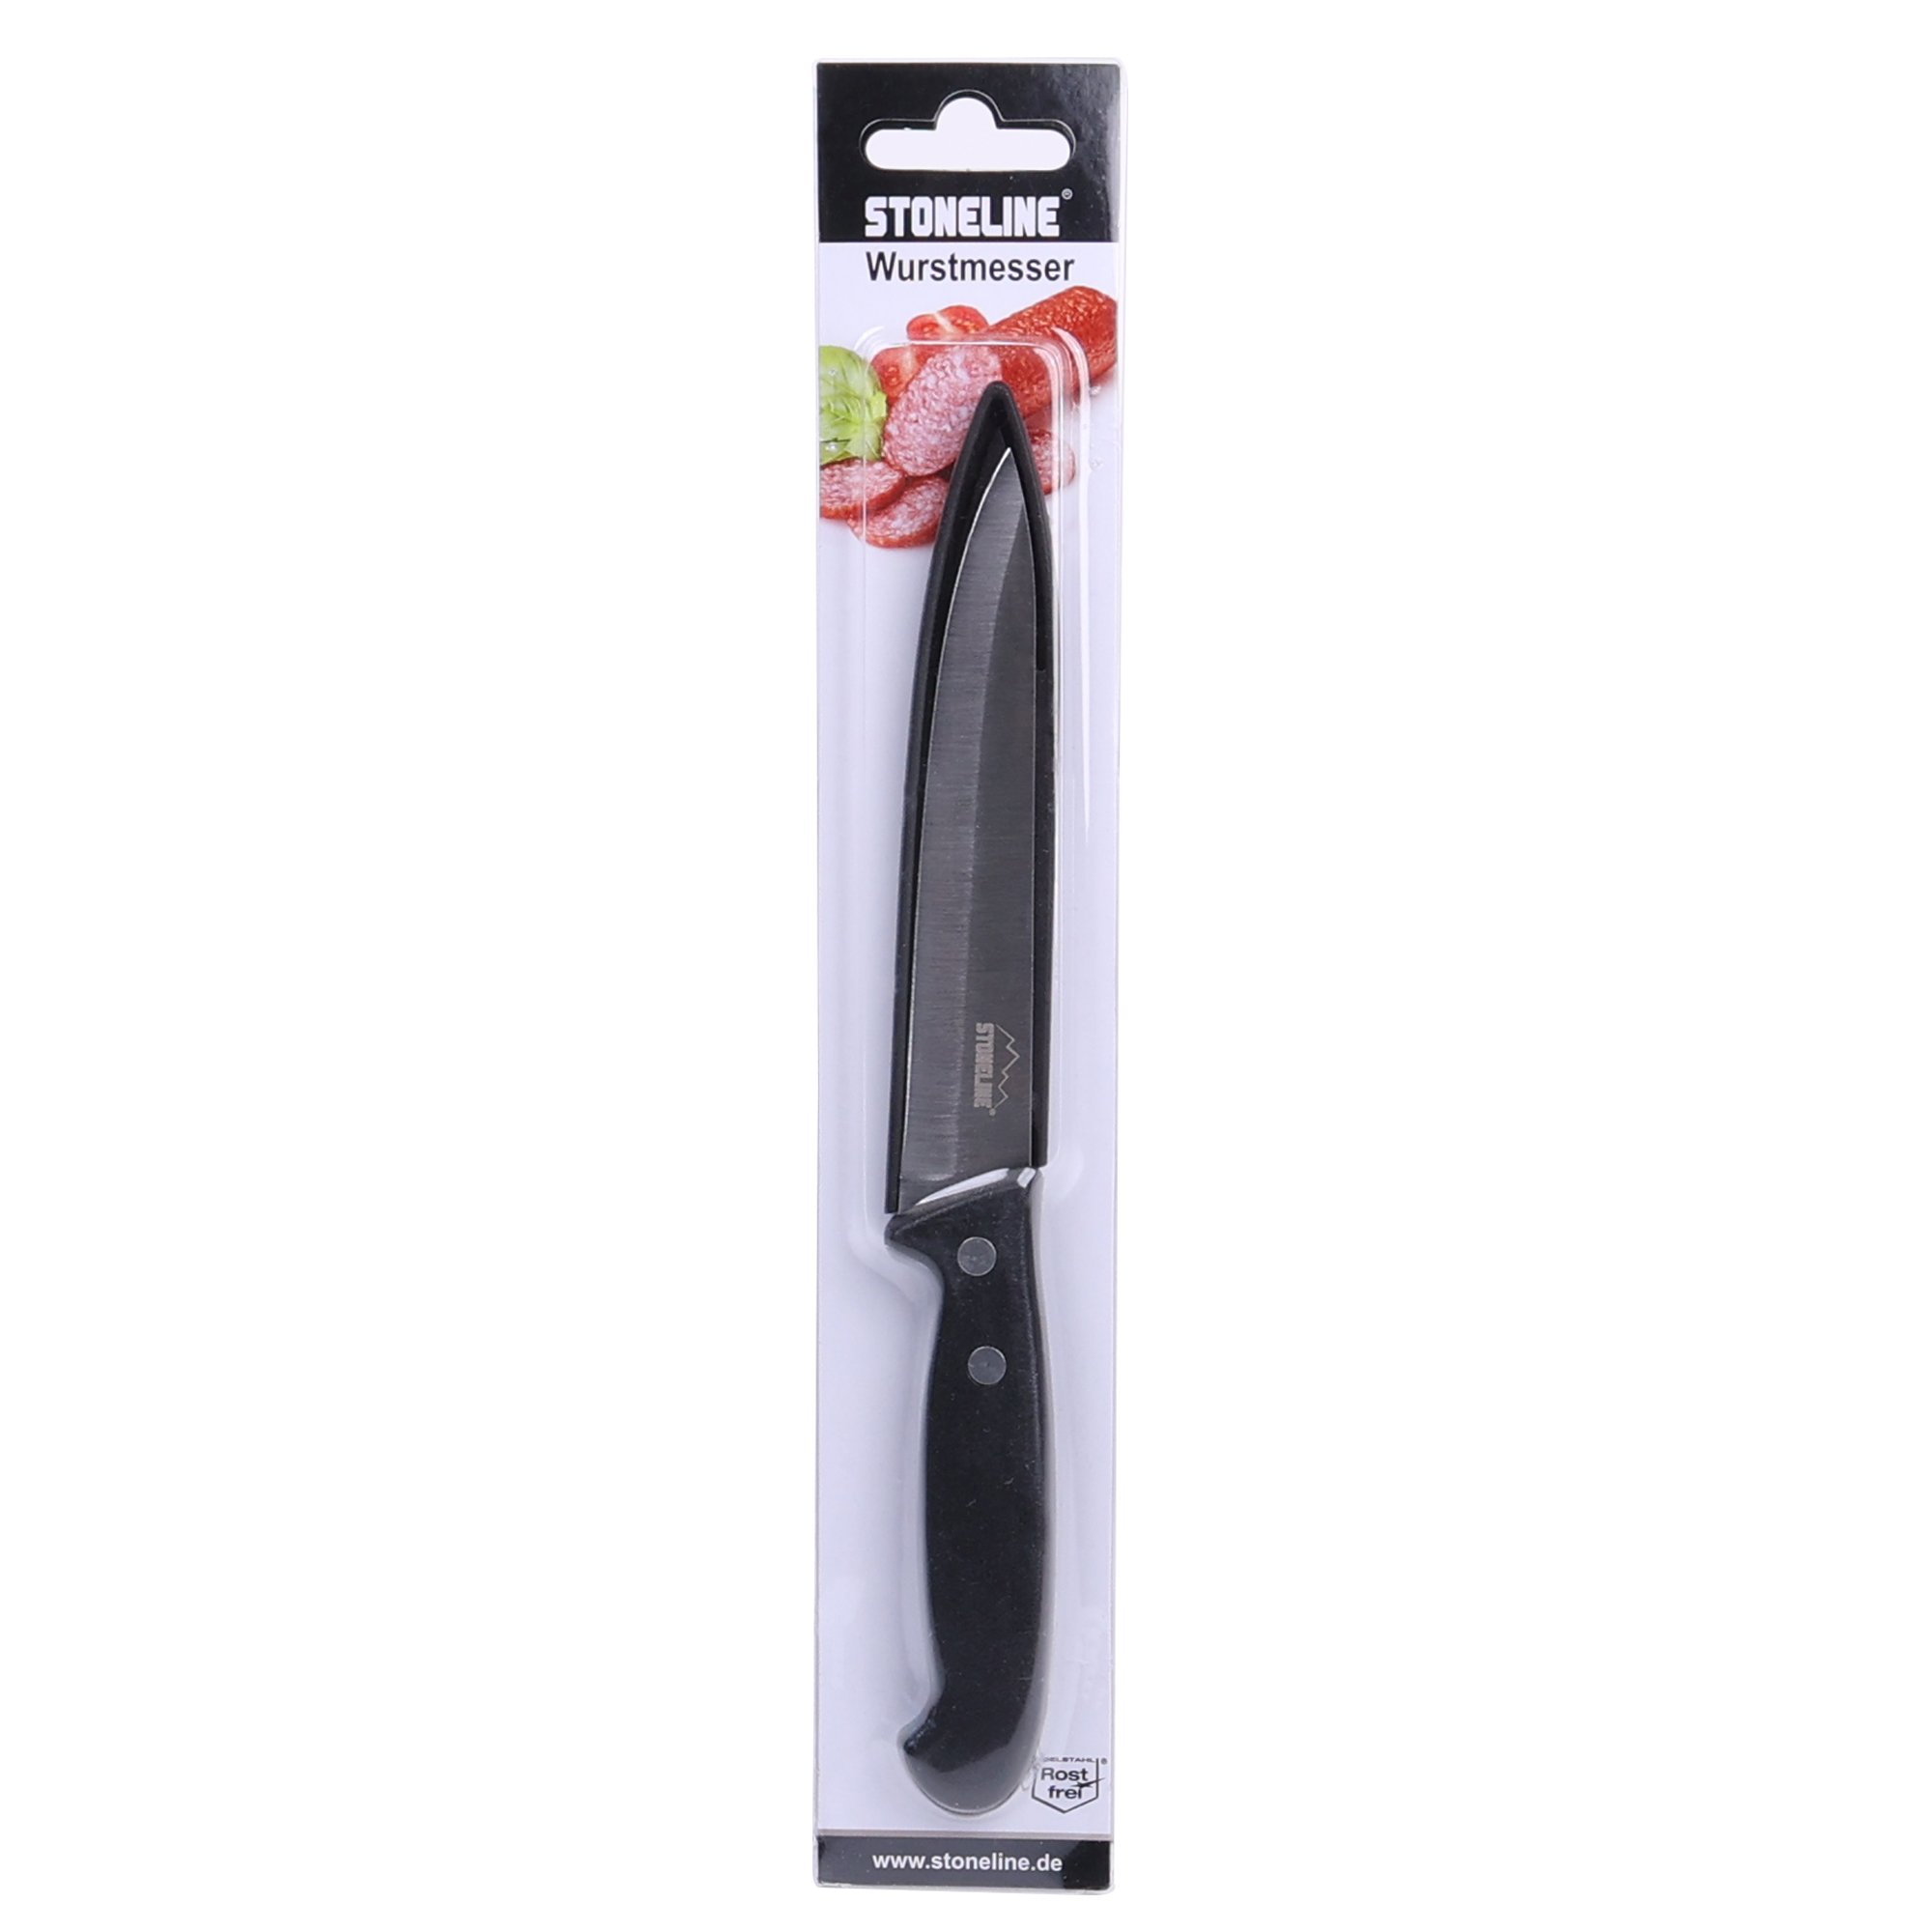 Cuchillo para salchichas STONELINE® 22,7 cm, con protector de hoja